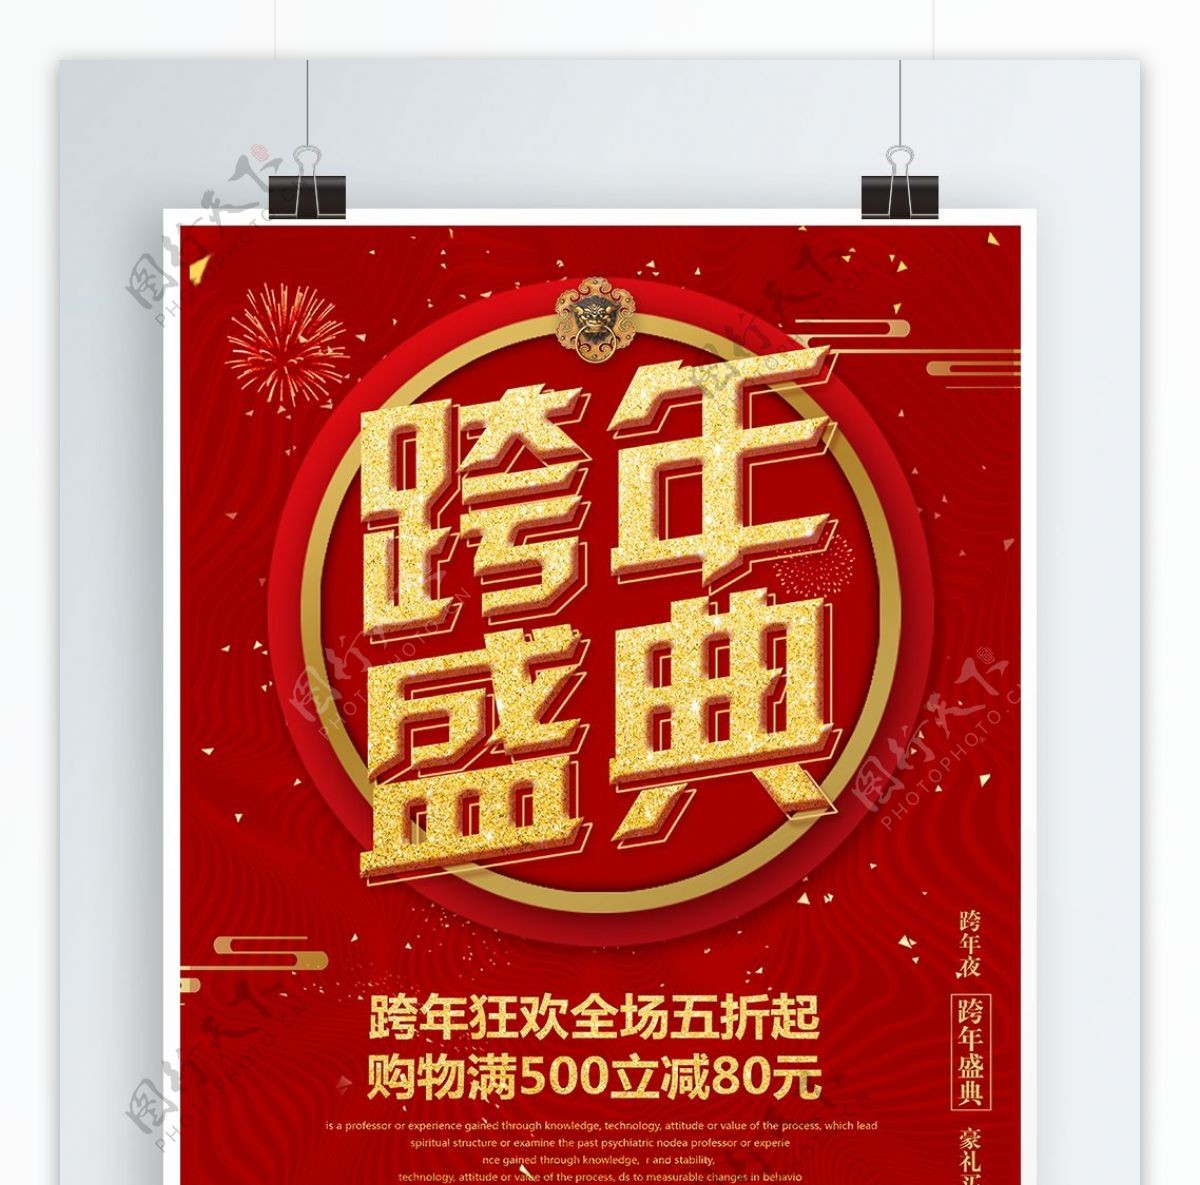 红色古典喜庆中国风2018跨年盛典海报